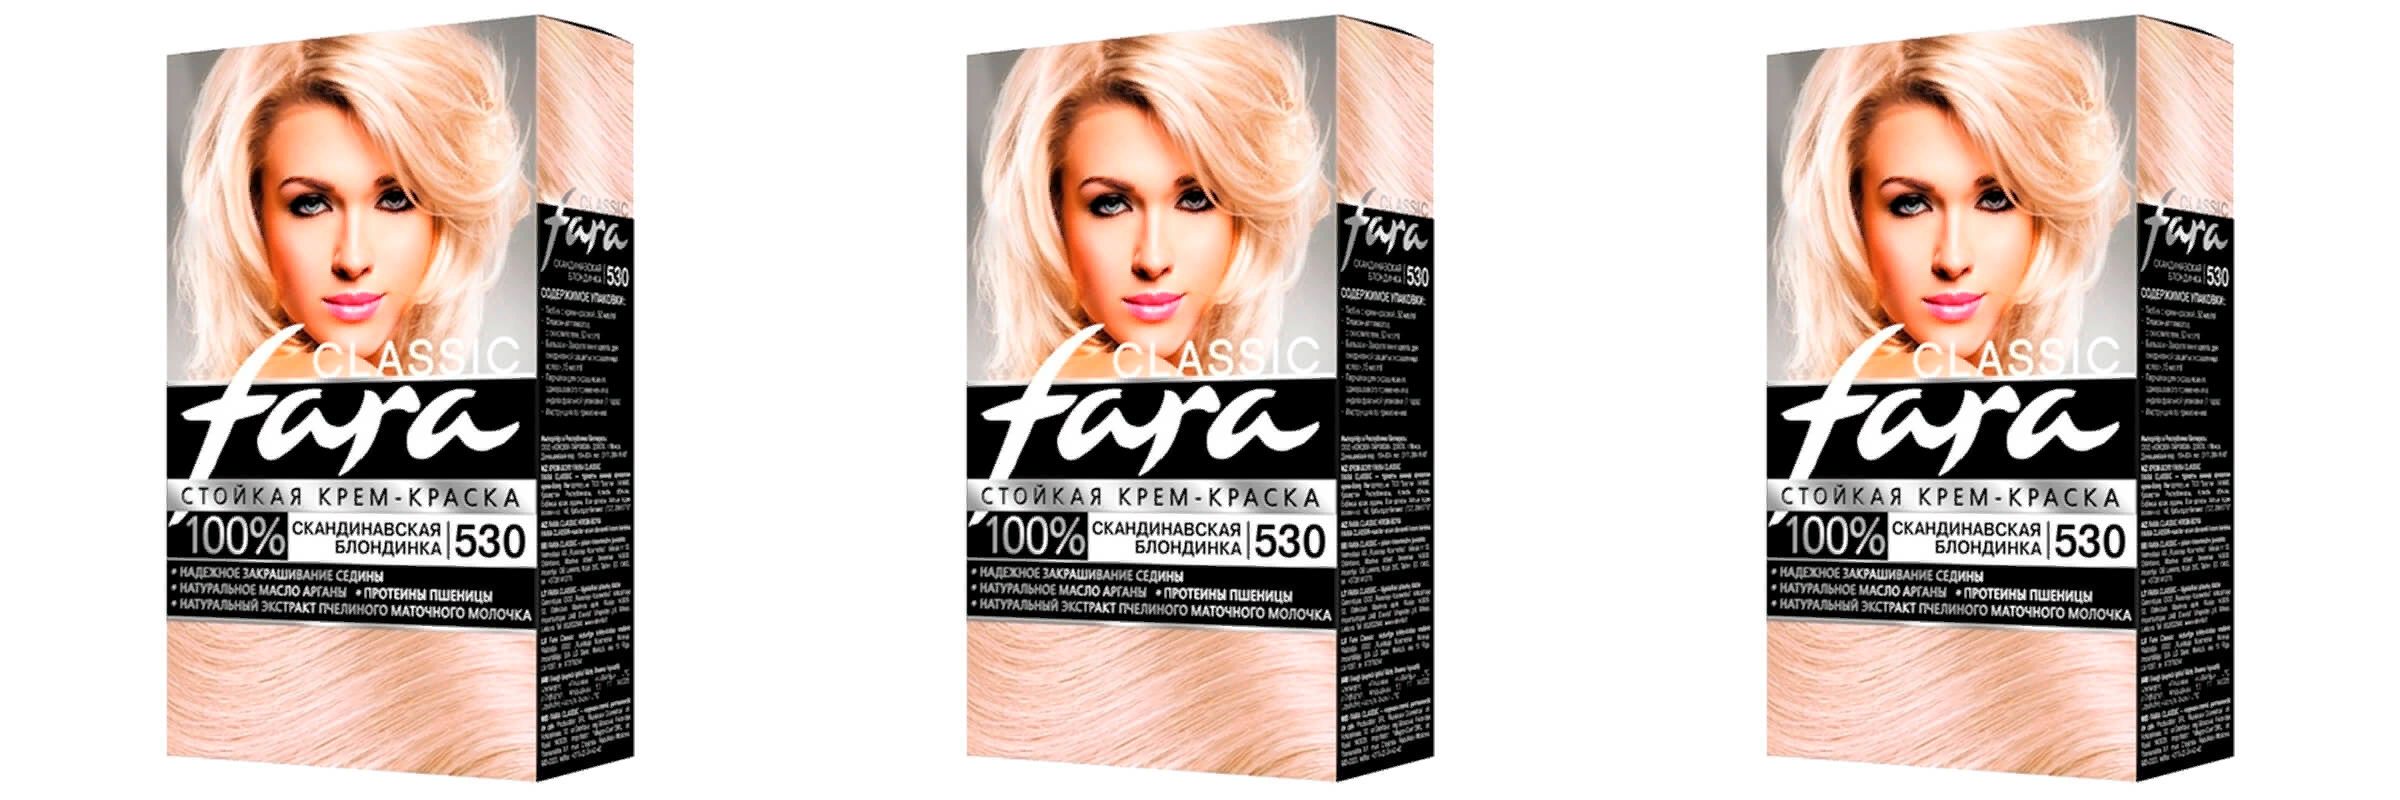 Краска для волос Fara Classic скандинавская блондинка 530, 3шт